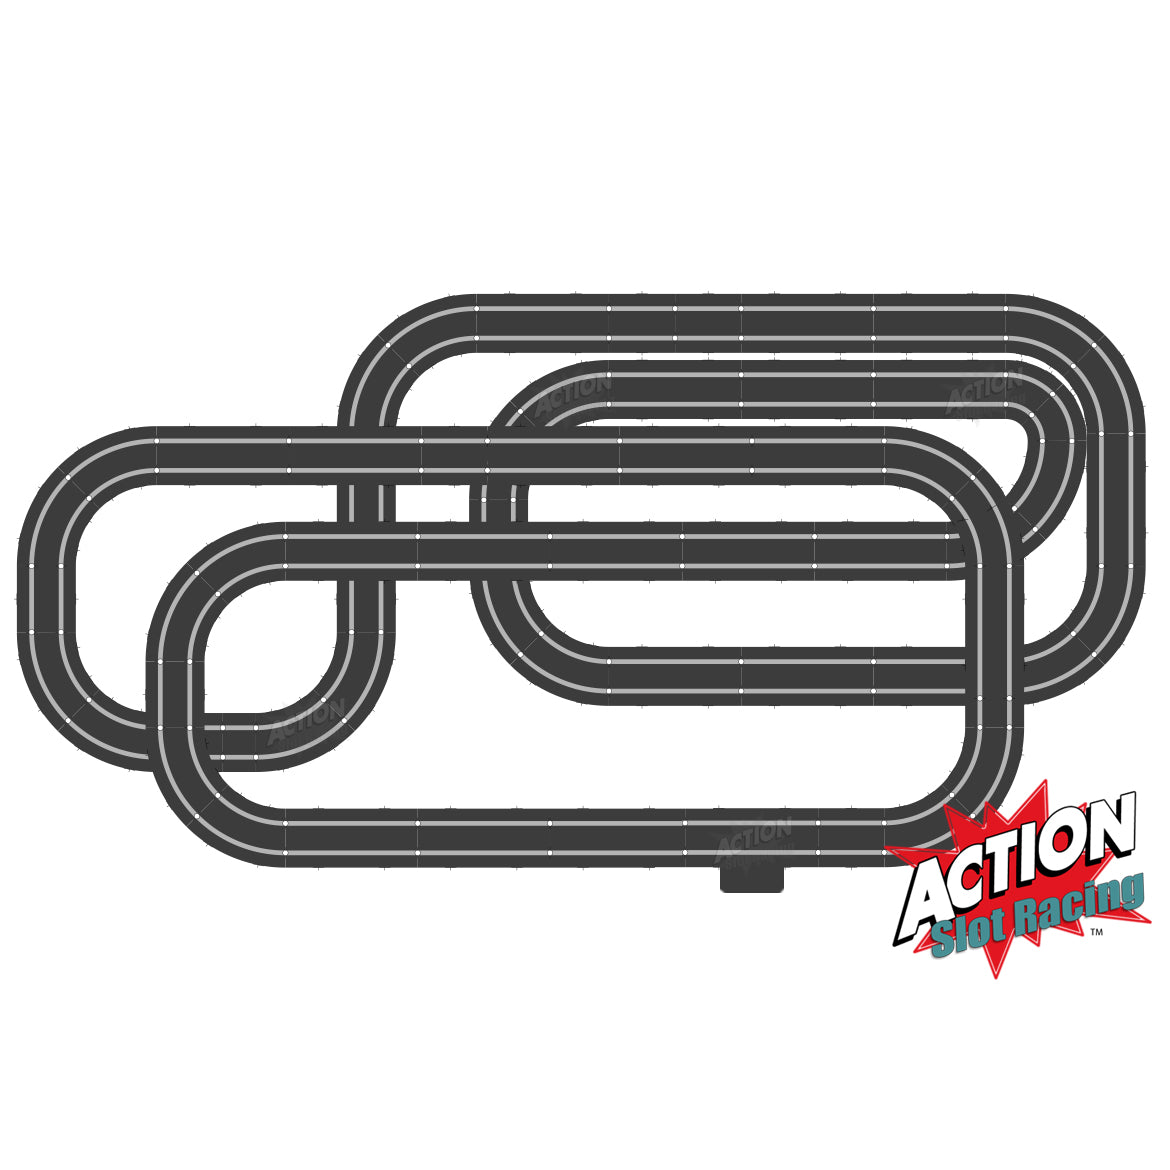 Diseño del juego de pistas Scalextric Sport 1:32 - ARC Air #AS7